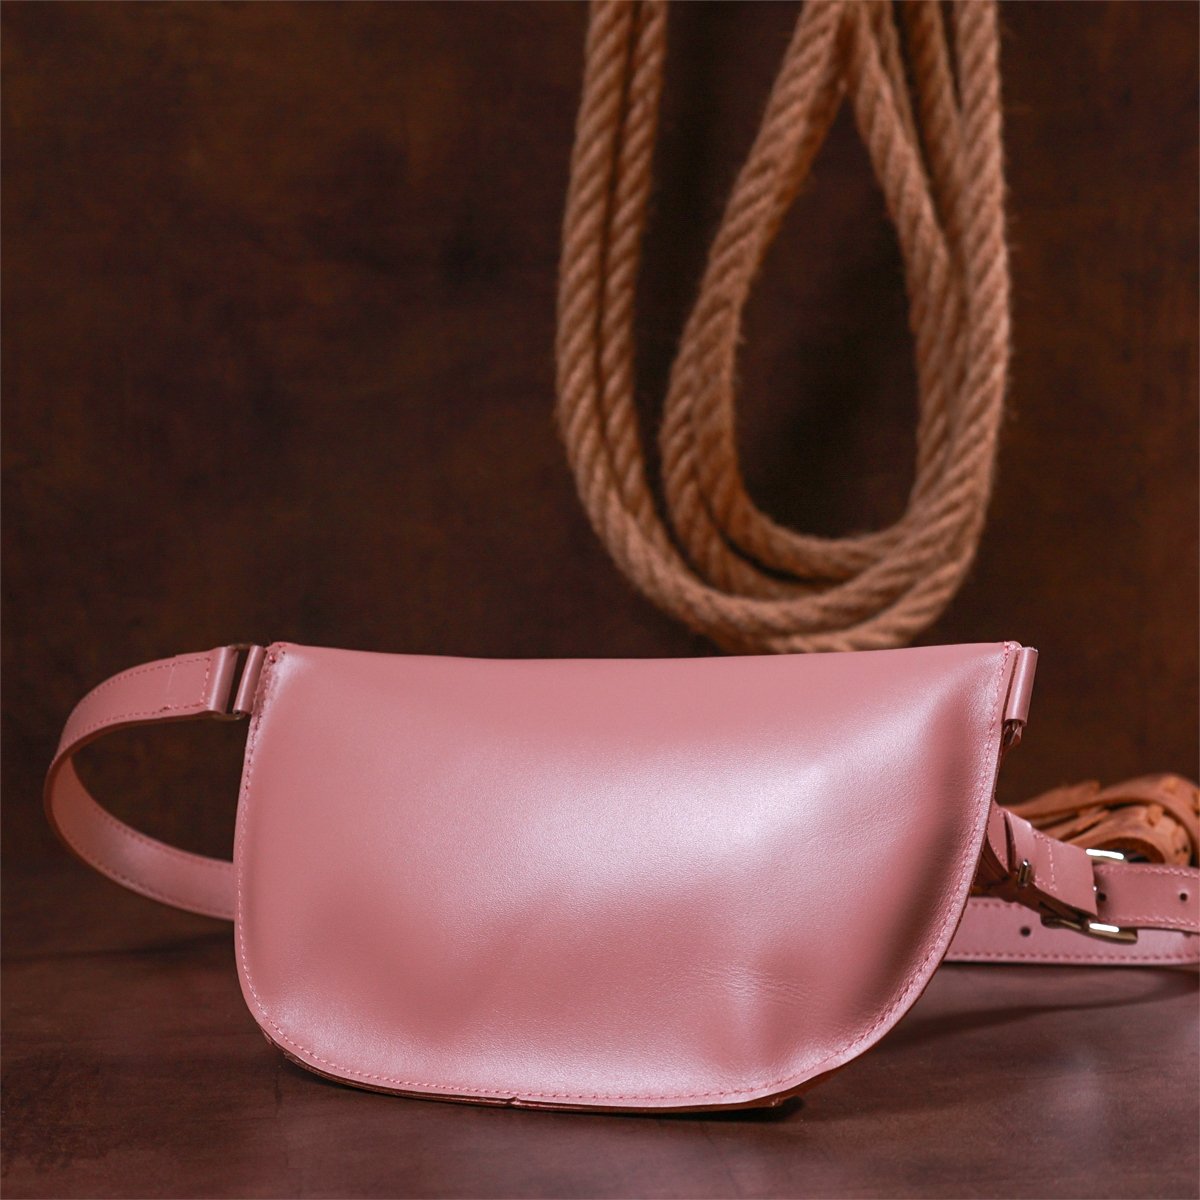 Женская сумка-бананка из натуральной кожи розового цвета с гладкой поверхностью Shvigel (16385)